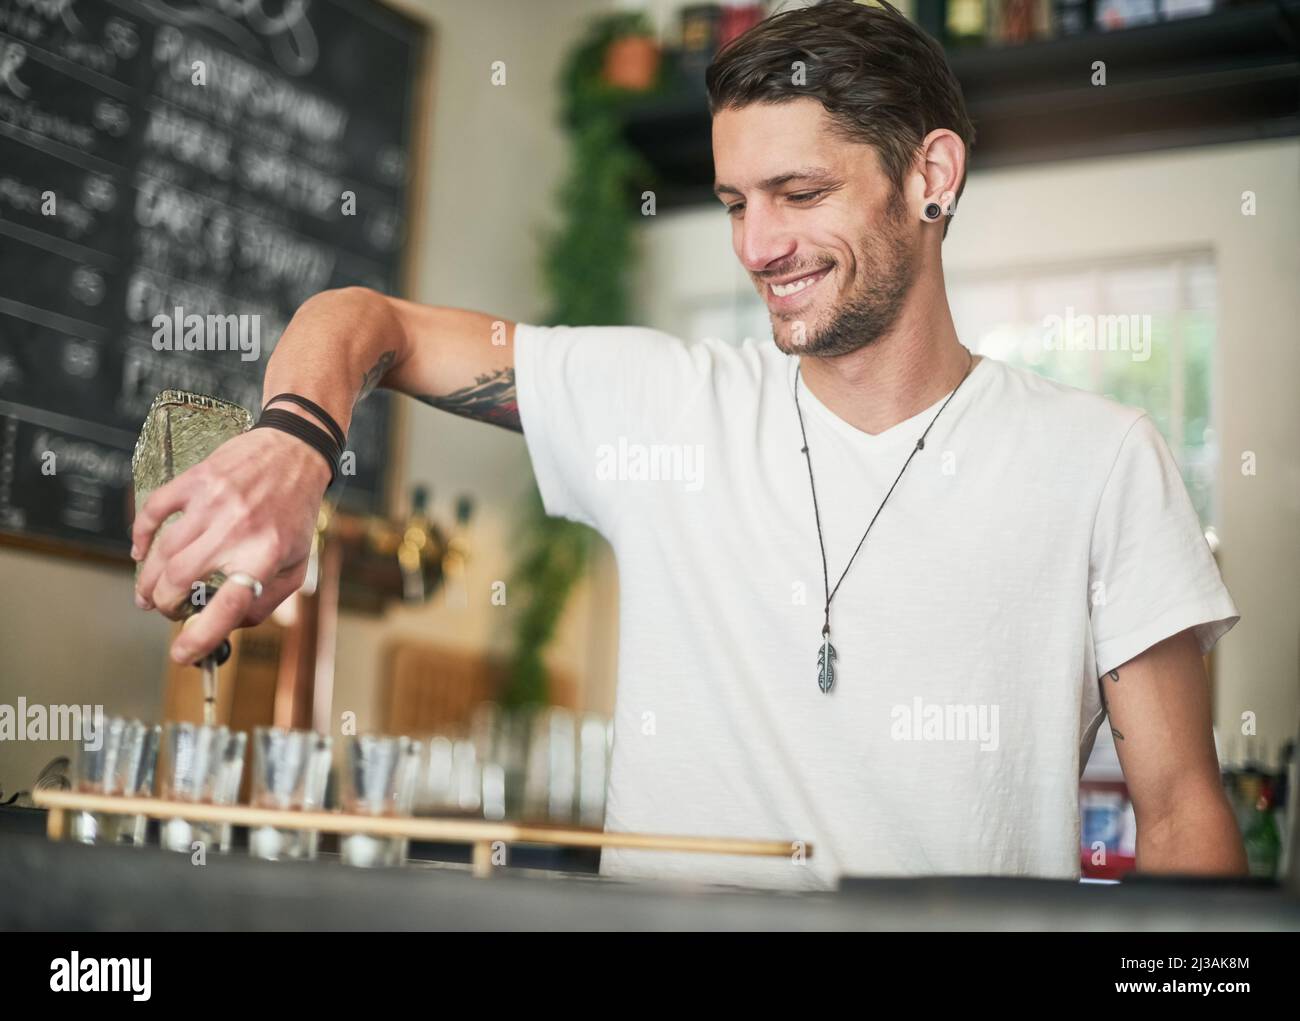 Les tireurs sont une entrée instantanée de la fête. Photo d'un jeune barman heureux qui verse des photos derrière le bar. Banque D'Images